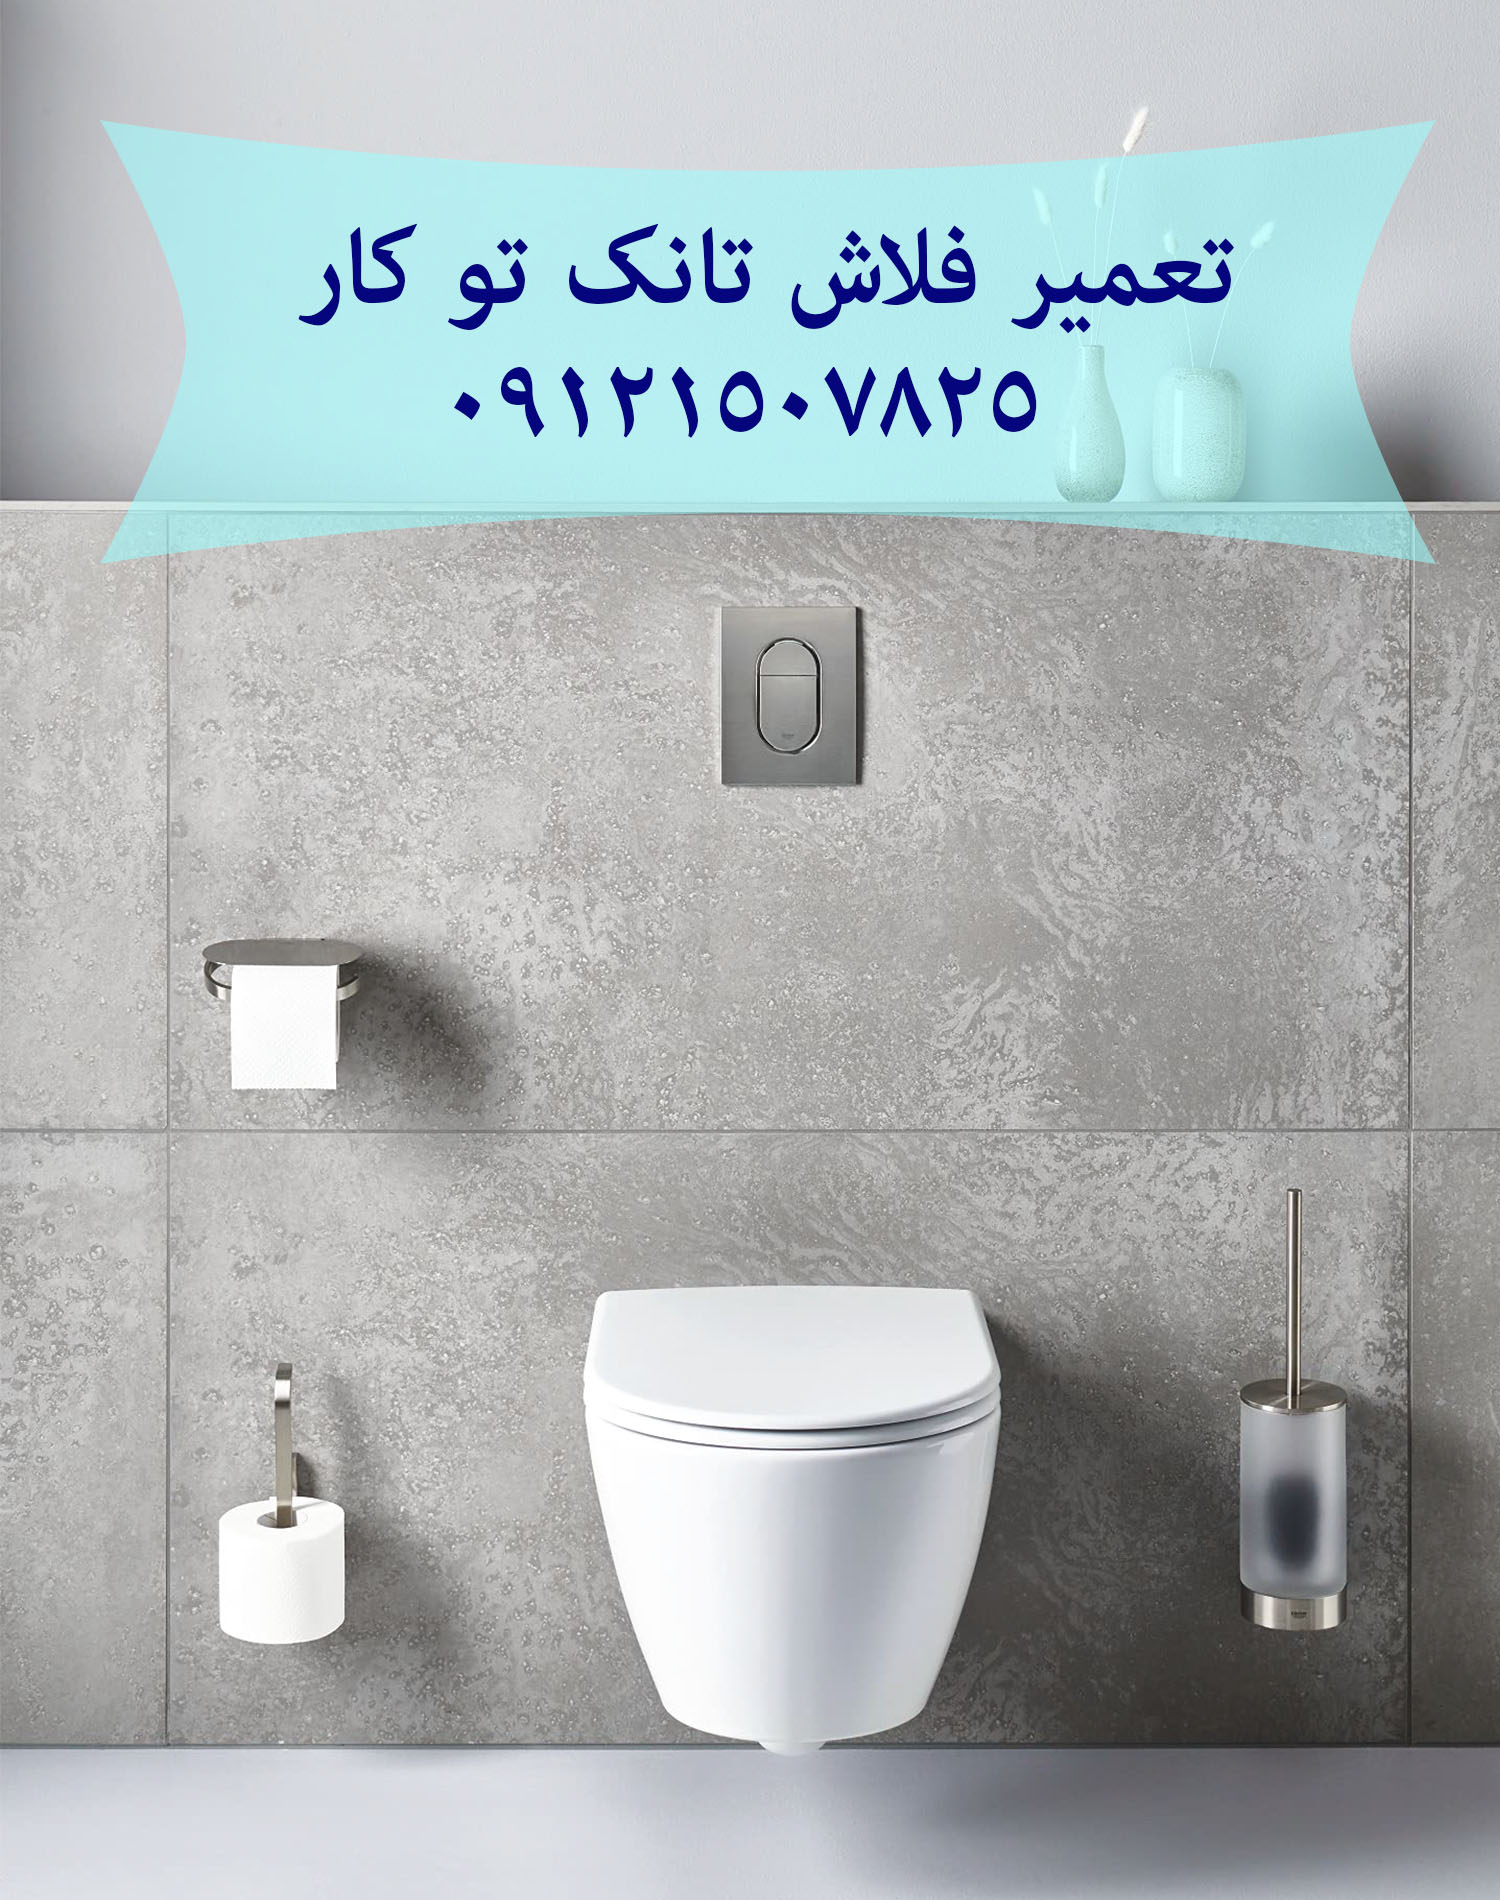 فروش و خدمات توالت فرنگی 09121507825